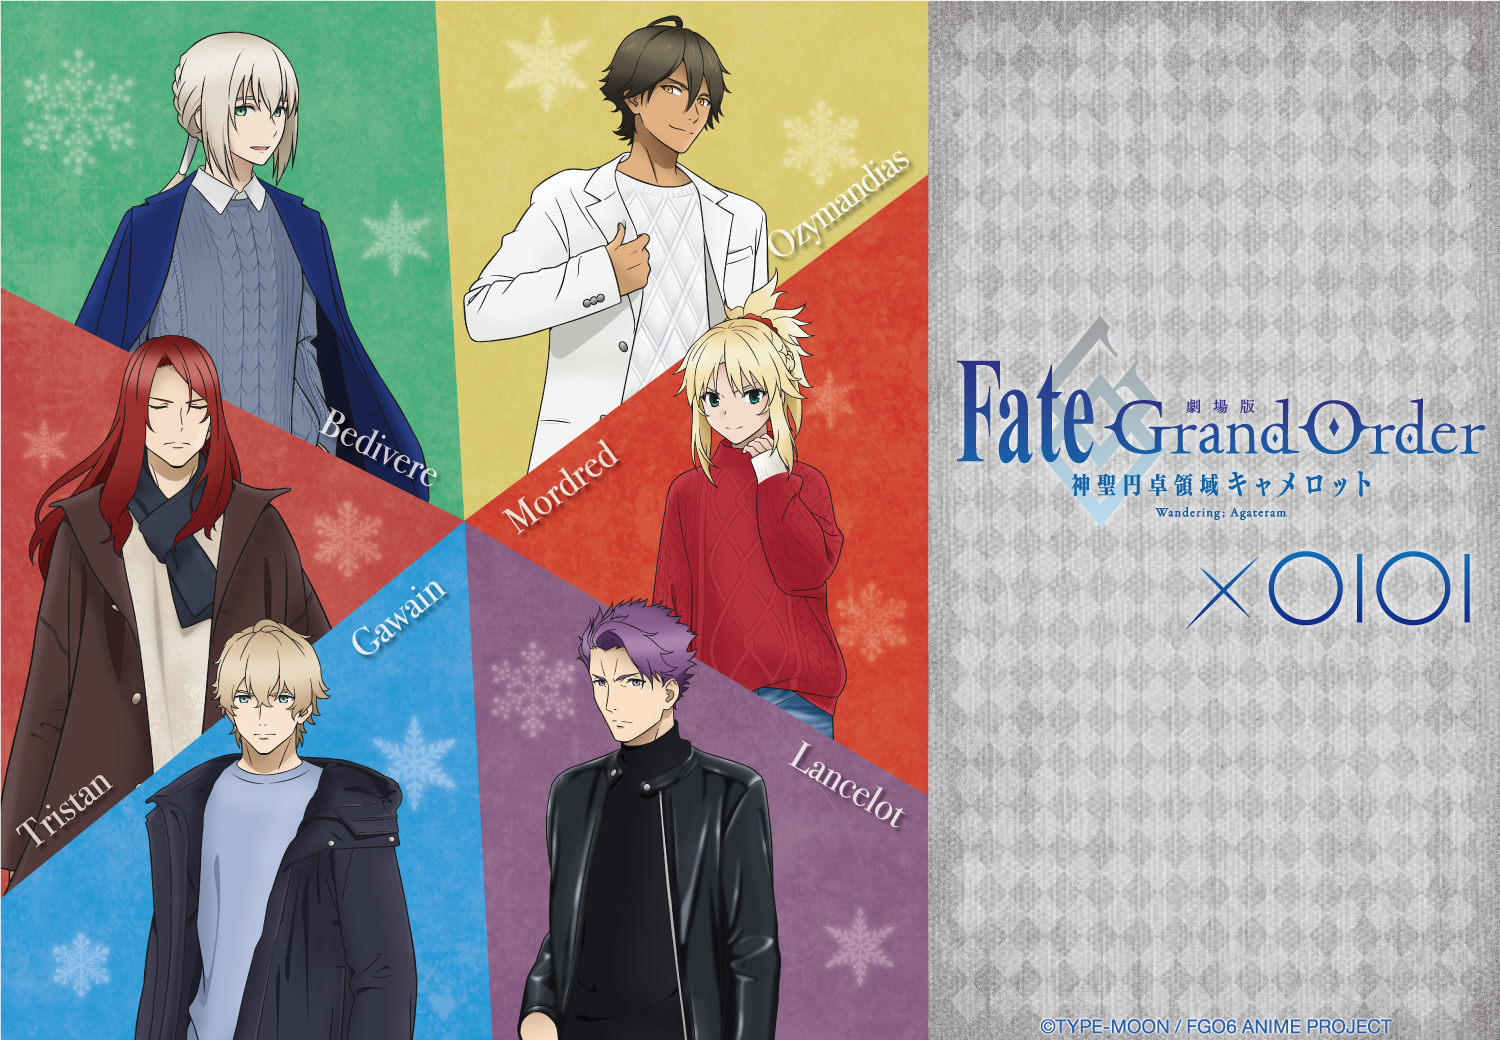 劇場版 Fate/Grand Order -神聖円卓領域キャメロット- × OIOI』期間